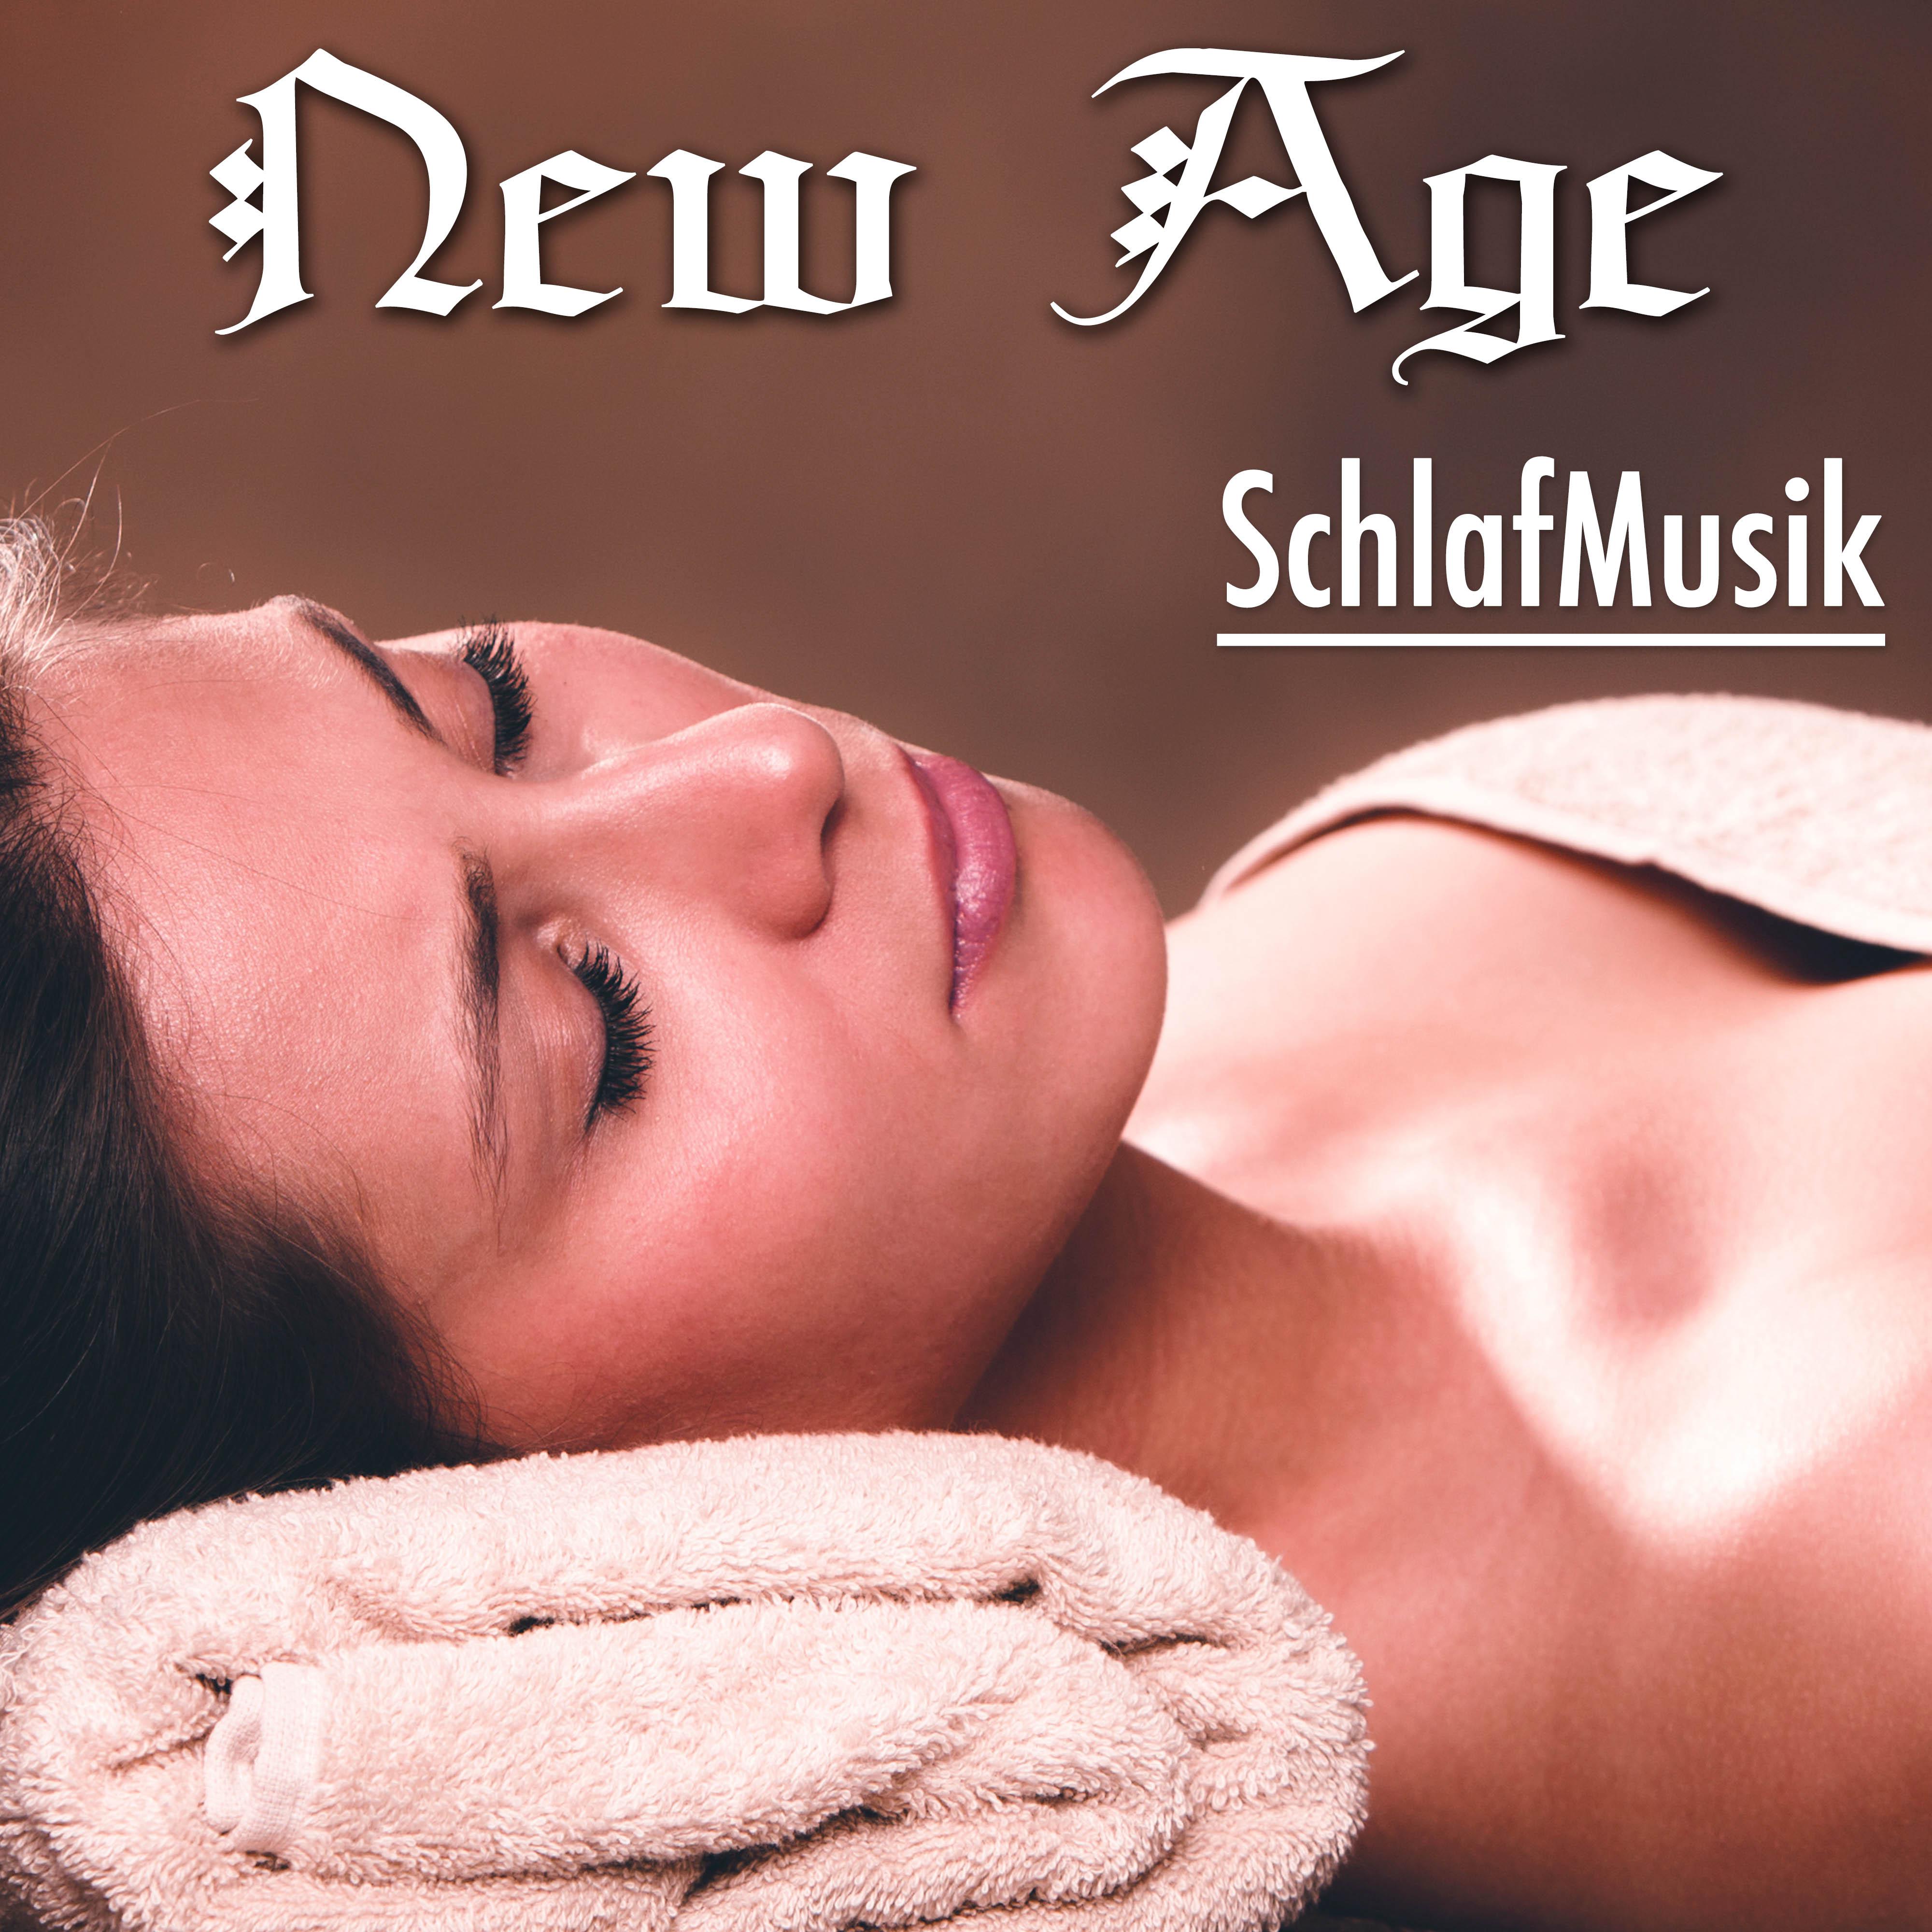 New Age SchlafMusik: Klassische Musik, Heilmusik fü r Gelassenheit, Tiefenentspannung und Gute und Stille Nacht